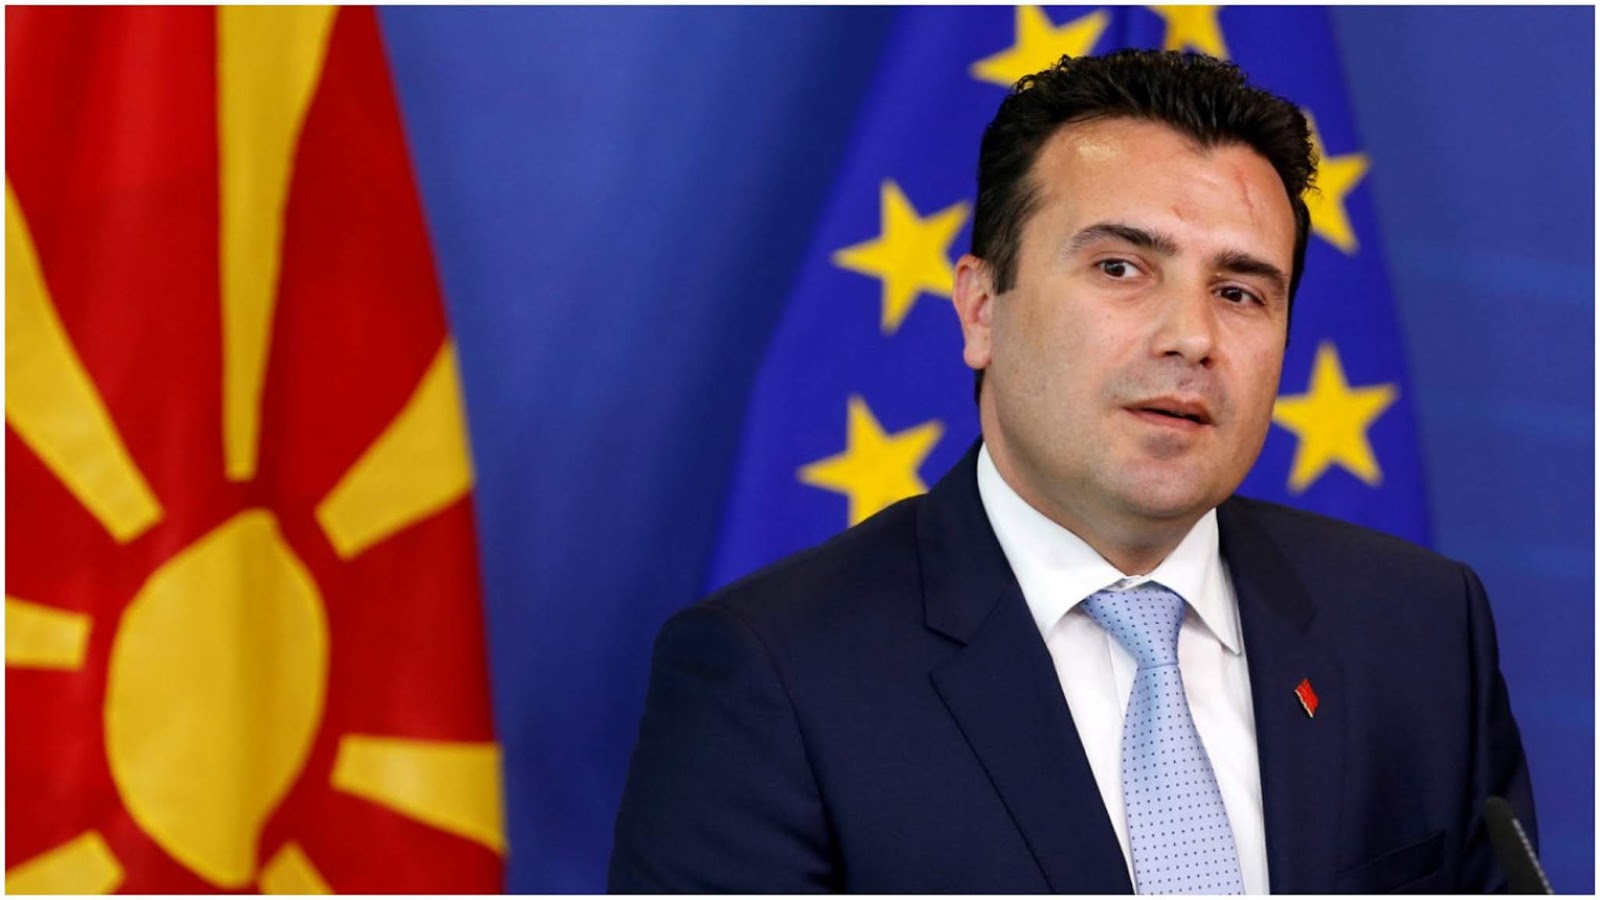 ΠΓΔΜ: Σήμερα η κρίσιμη ψηφοφορία στη Βουλή για τις αλλαγές στο Σύνταγμα